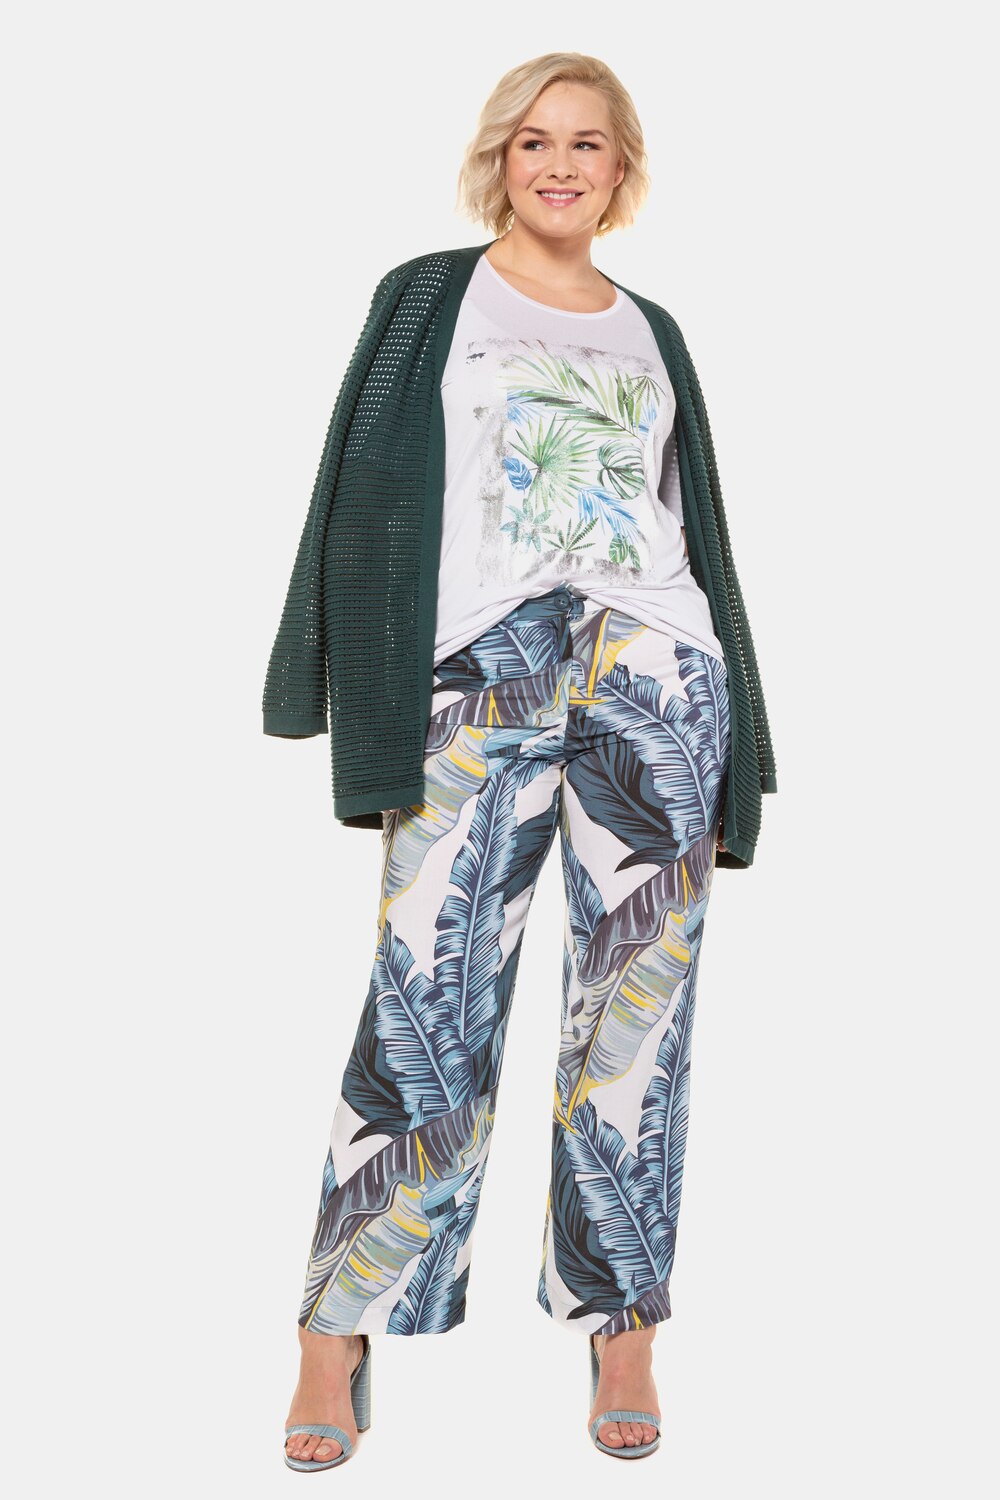 Plus Size Tropical Palm Print Round Neck Stretch Knit Top, Woman, white, size: 36/38, viscose, Ulla Popken